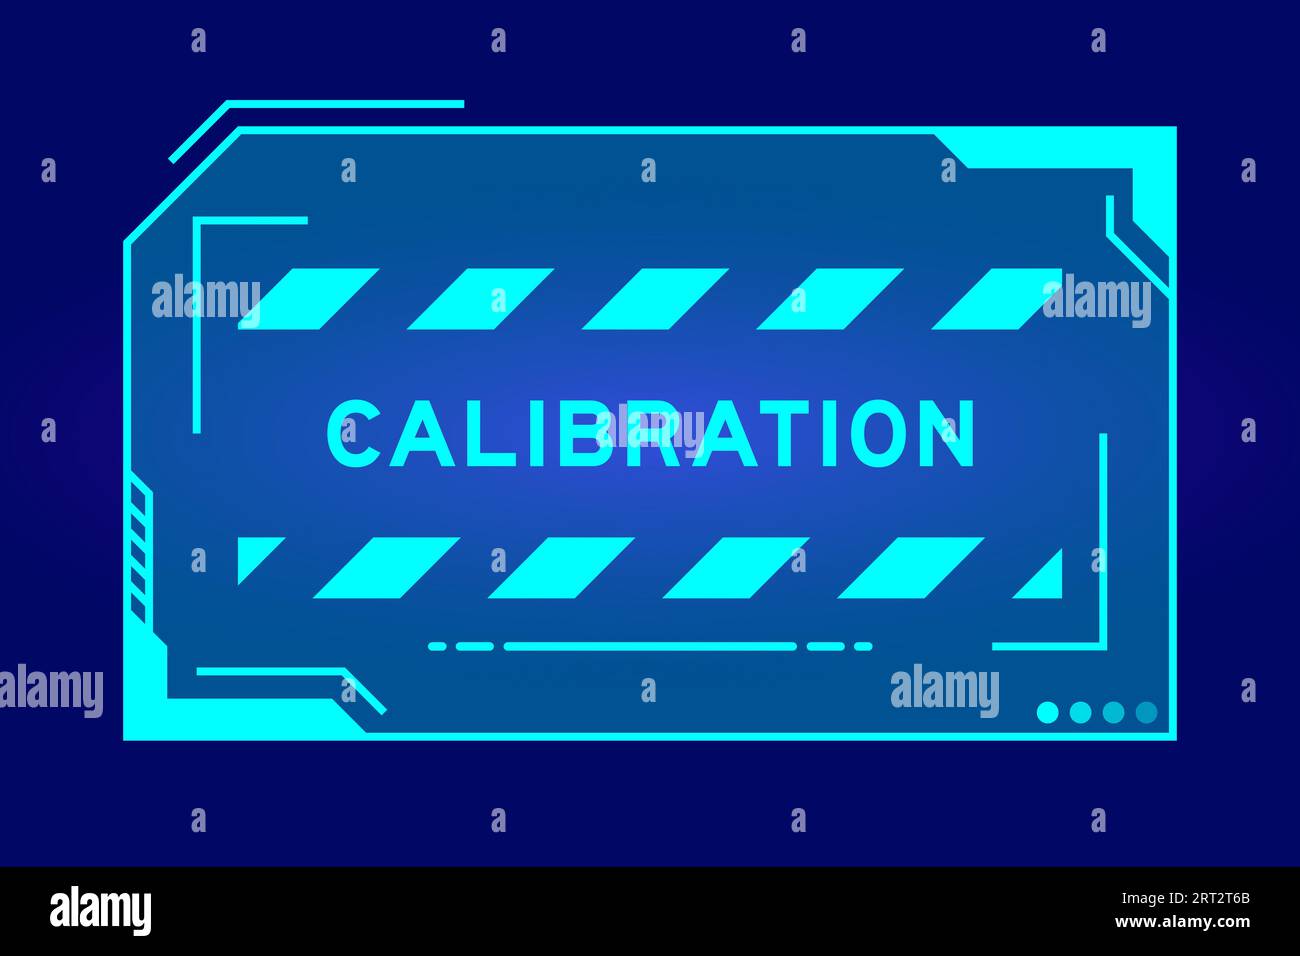 Couleur bleue de bannière hud futuriste qui ont l'étalonnage de mot sur l'écran de l'interface utilisateur sur fond noir Illustration de Vecteur